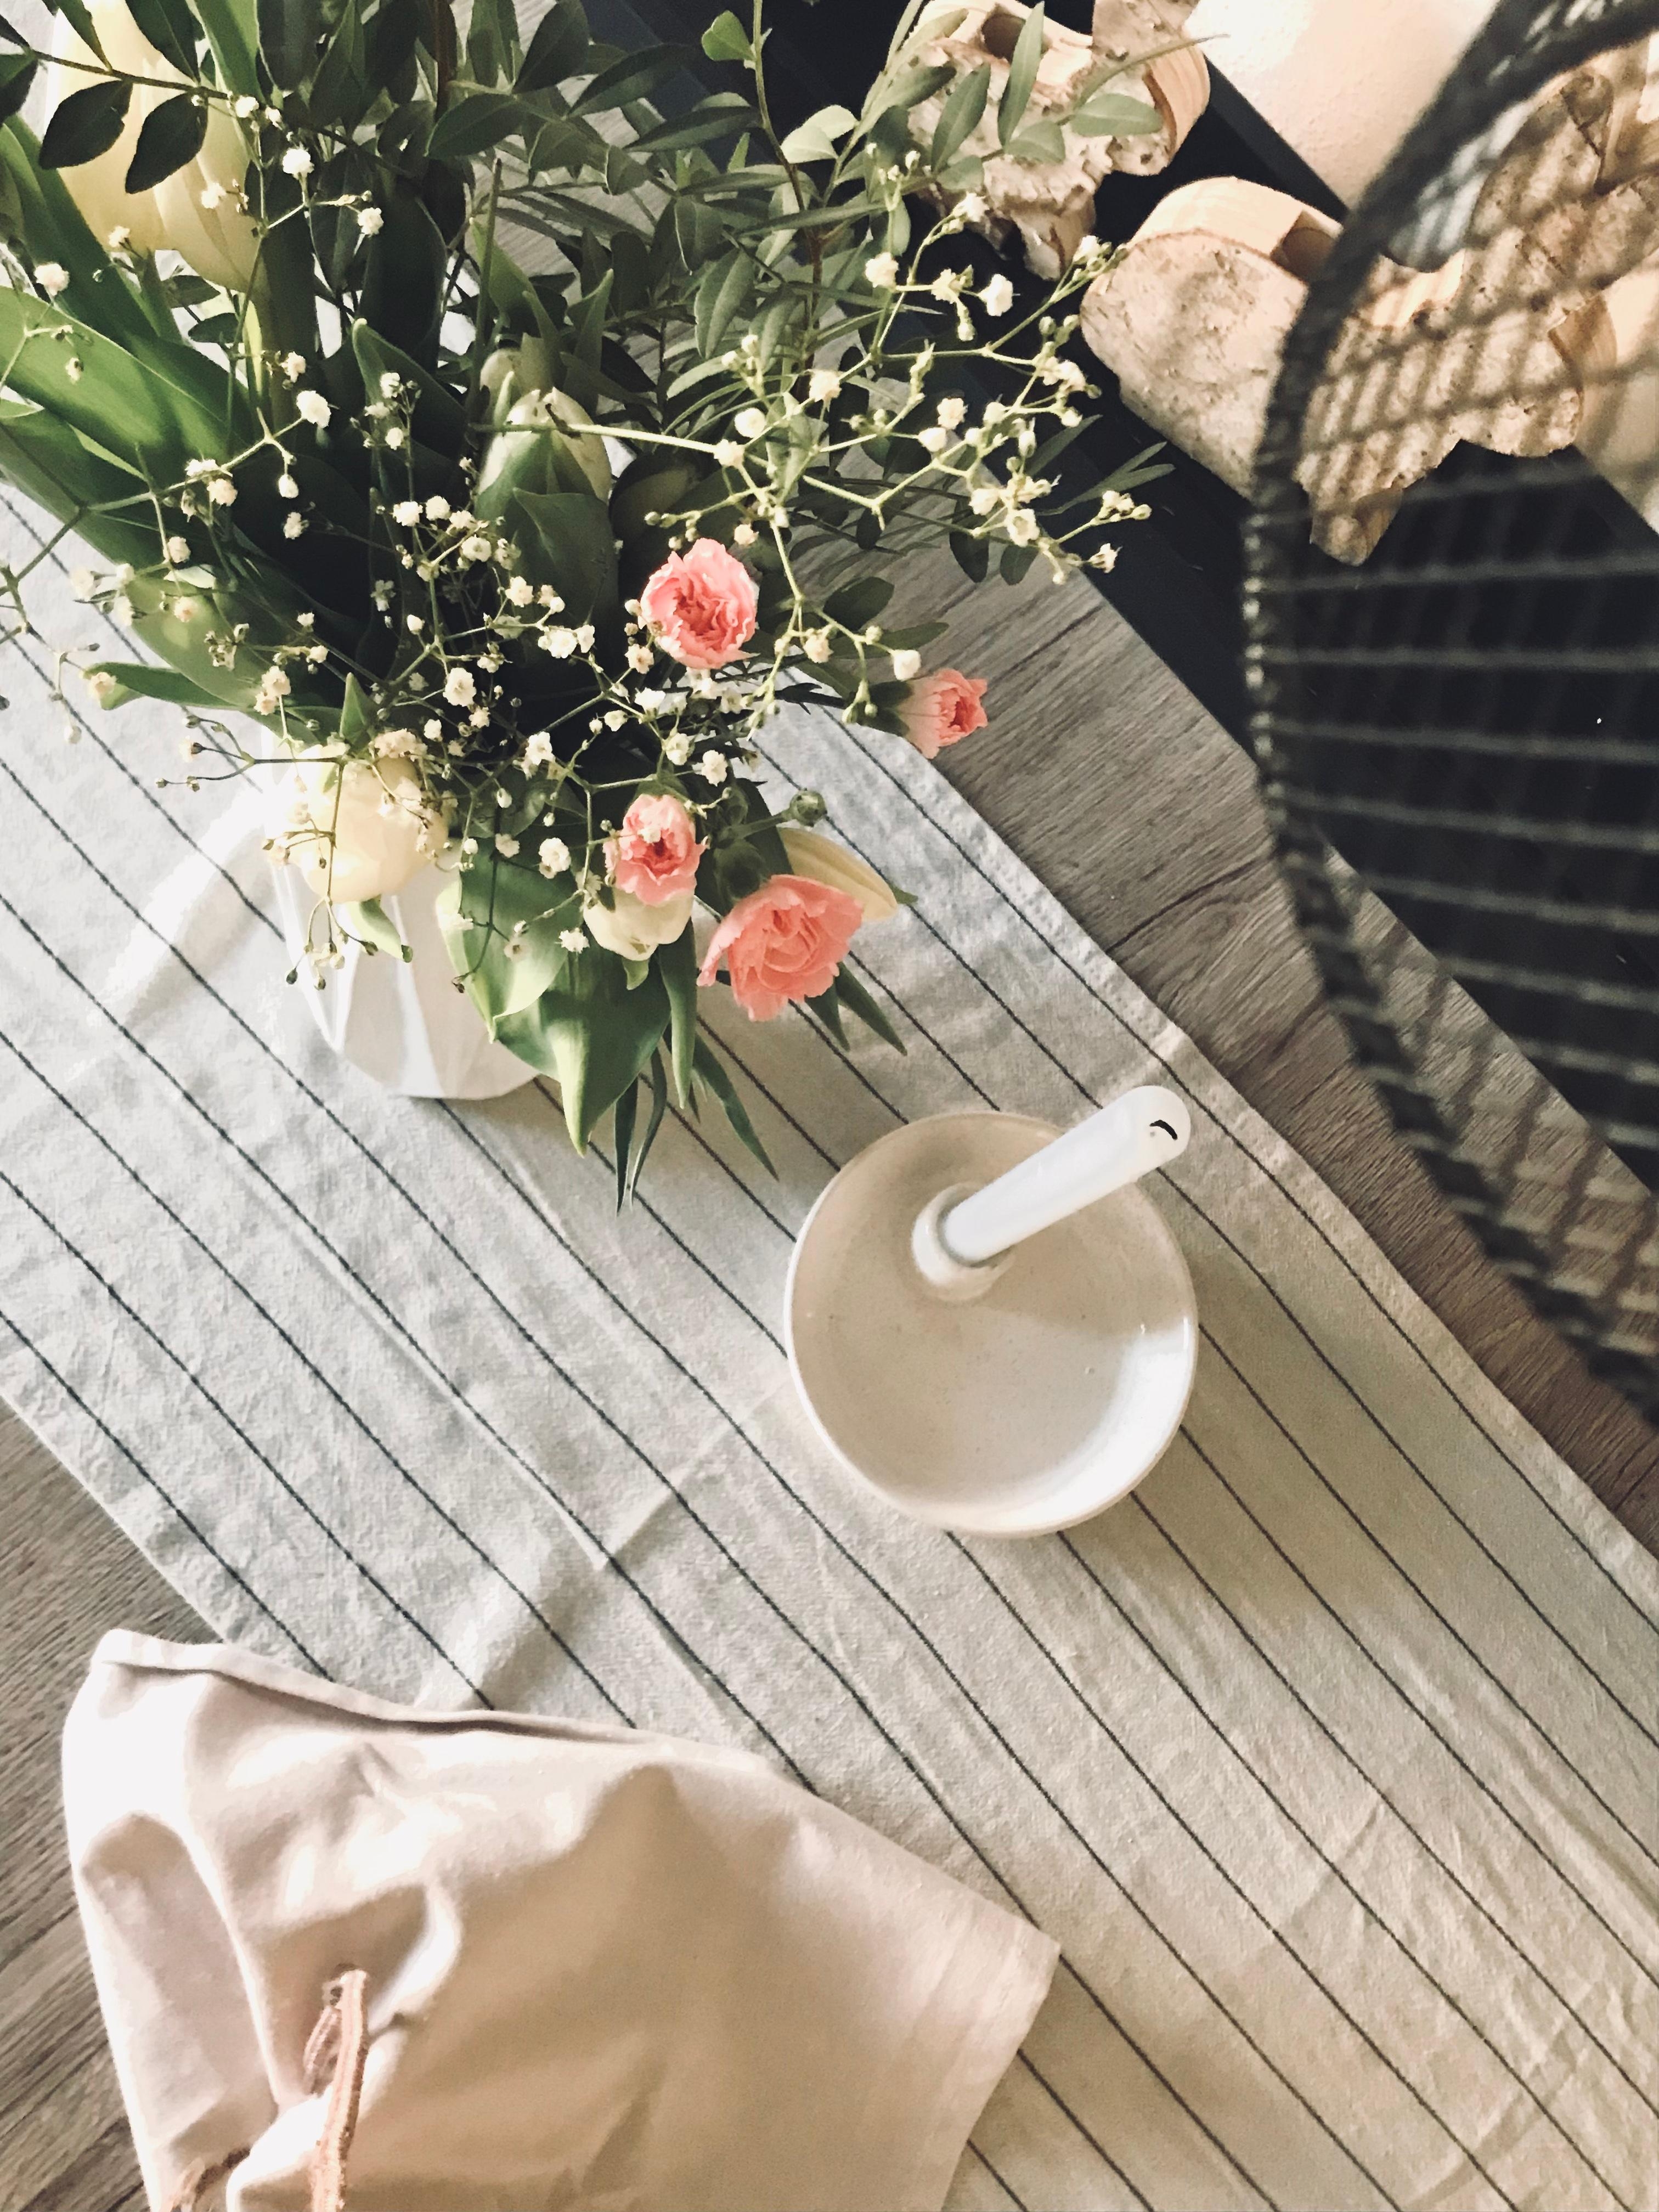 Sunday 🌦
#freshflower #vase #kerze #tischläufer #lampe #tuch #esstisch #tulpen #nelken #flower 